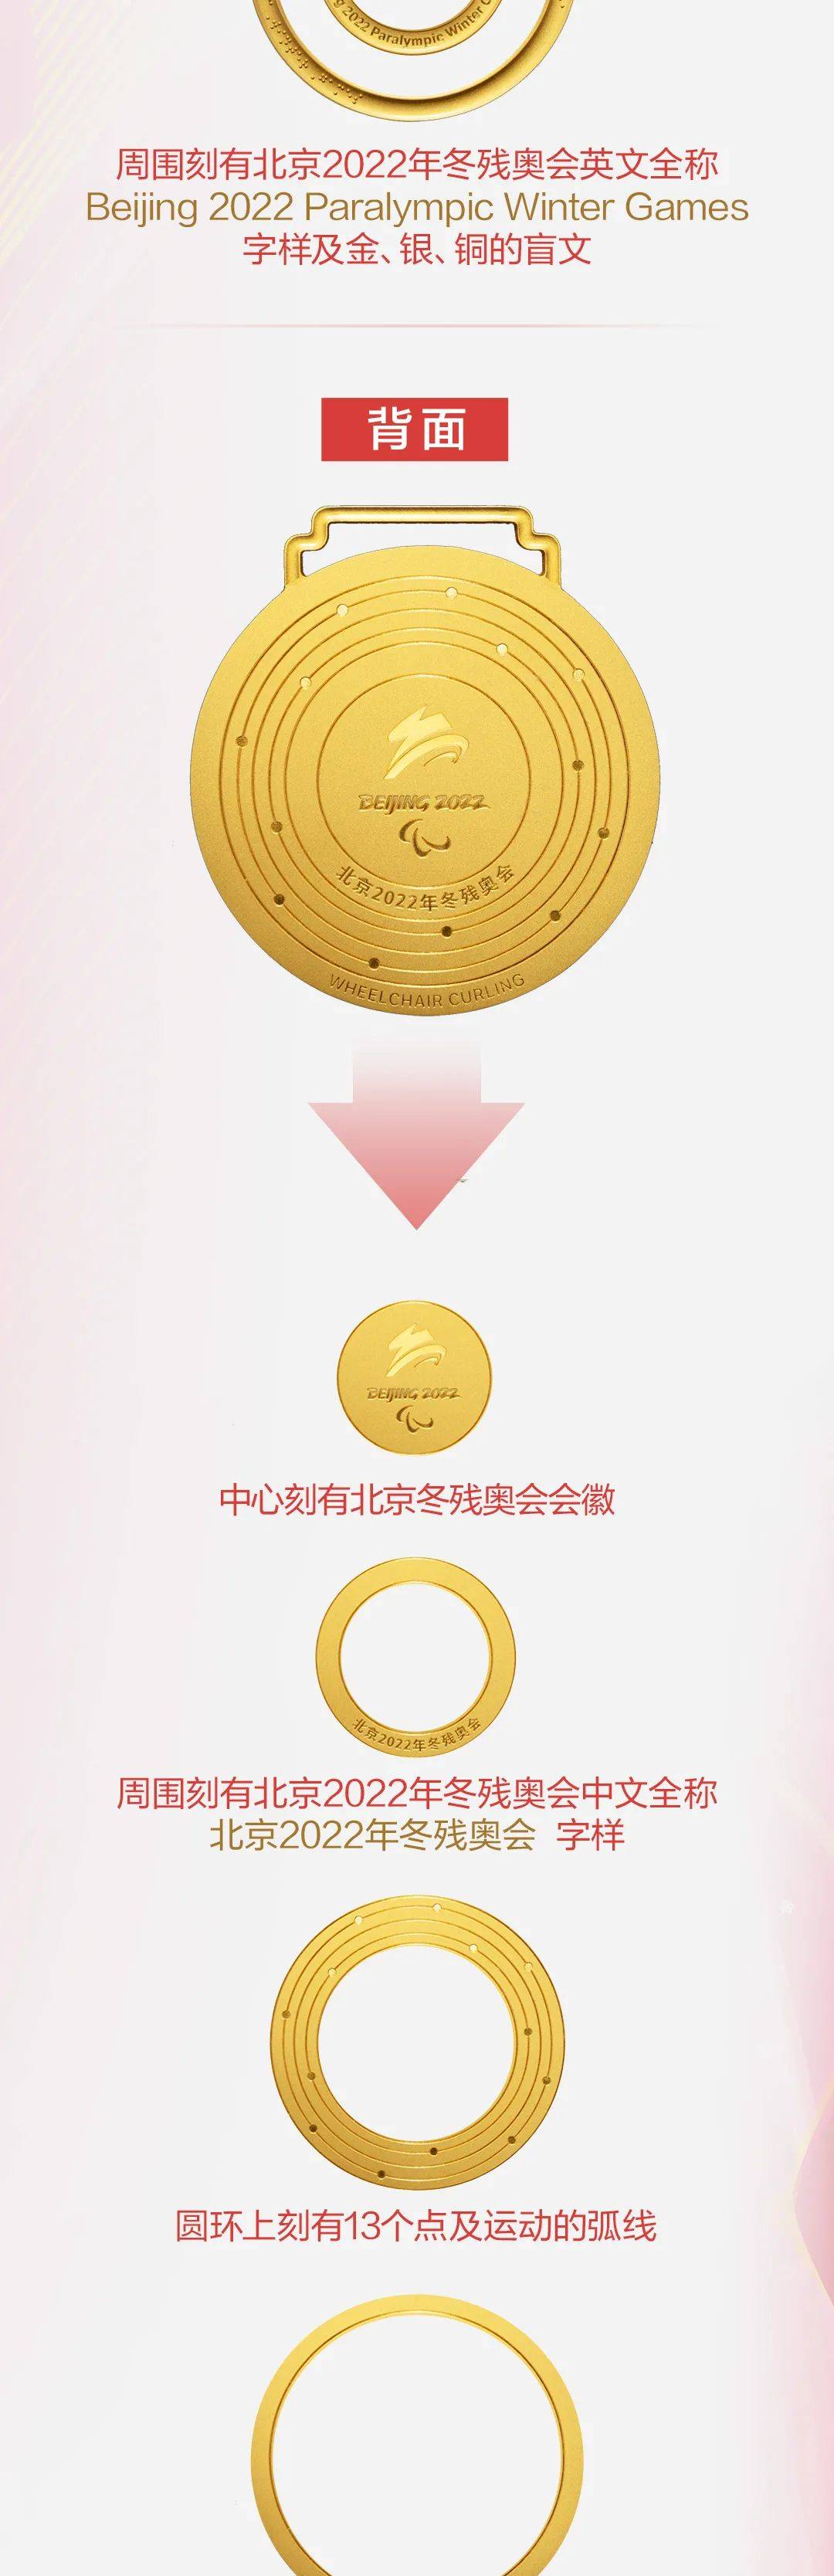 金牌银牌铜牌图片（北京2022年冬奥会奖牌分享）